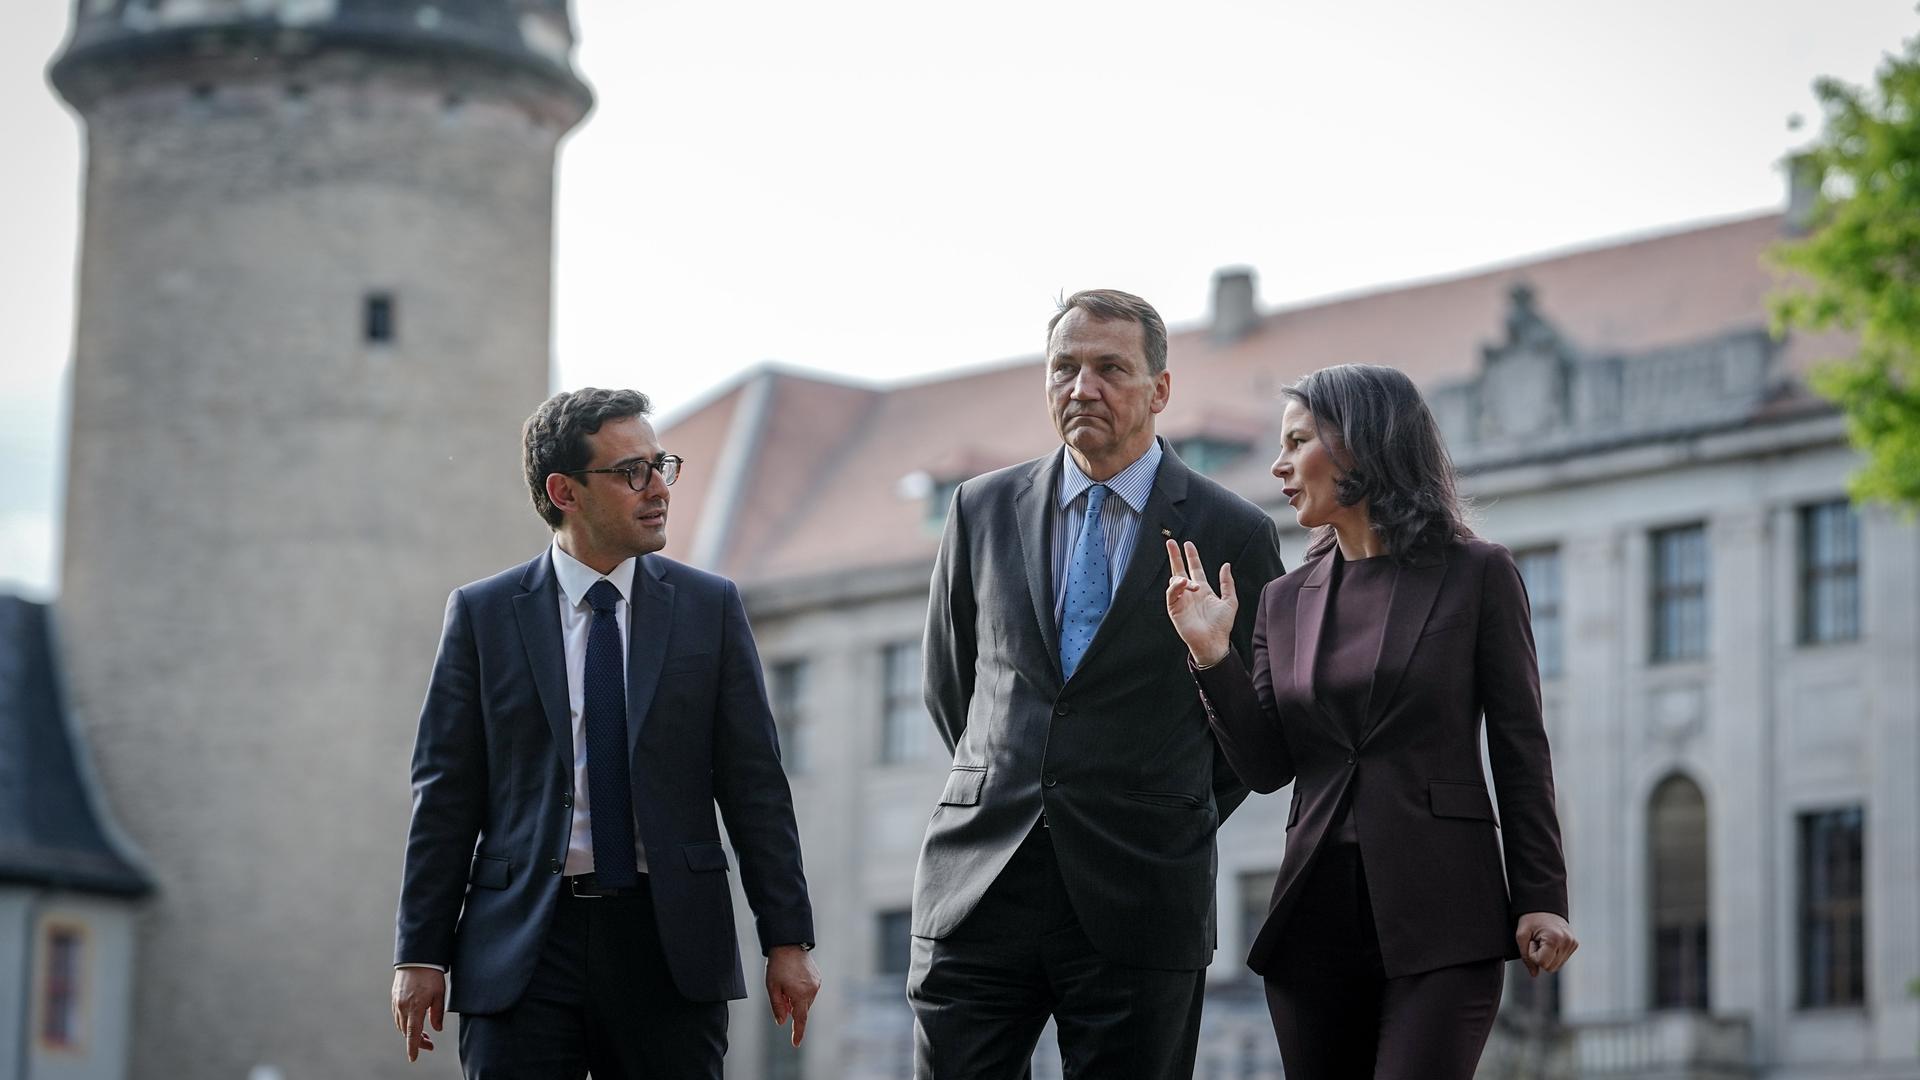 Bundesaußenministerin Annalena Baerbock geht im Rahmen des Weimarer Dreiecks mit ihren Amtskollegen Stéphane Séjourné (l) aus Frankreich und Radoslaw Sikorski aus Polen durch einen Park.